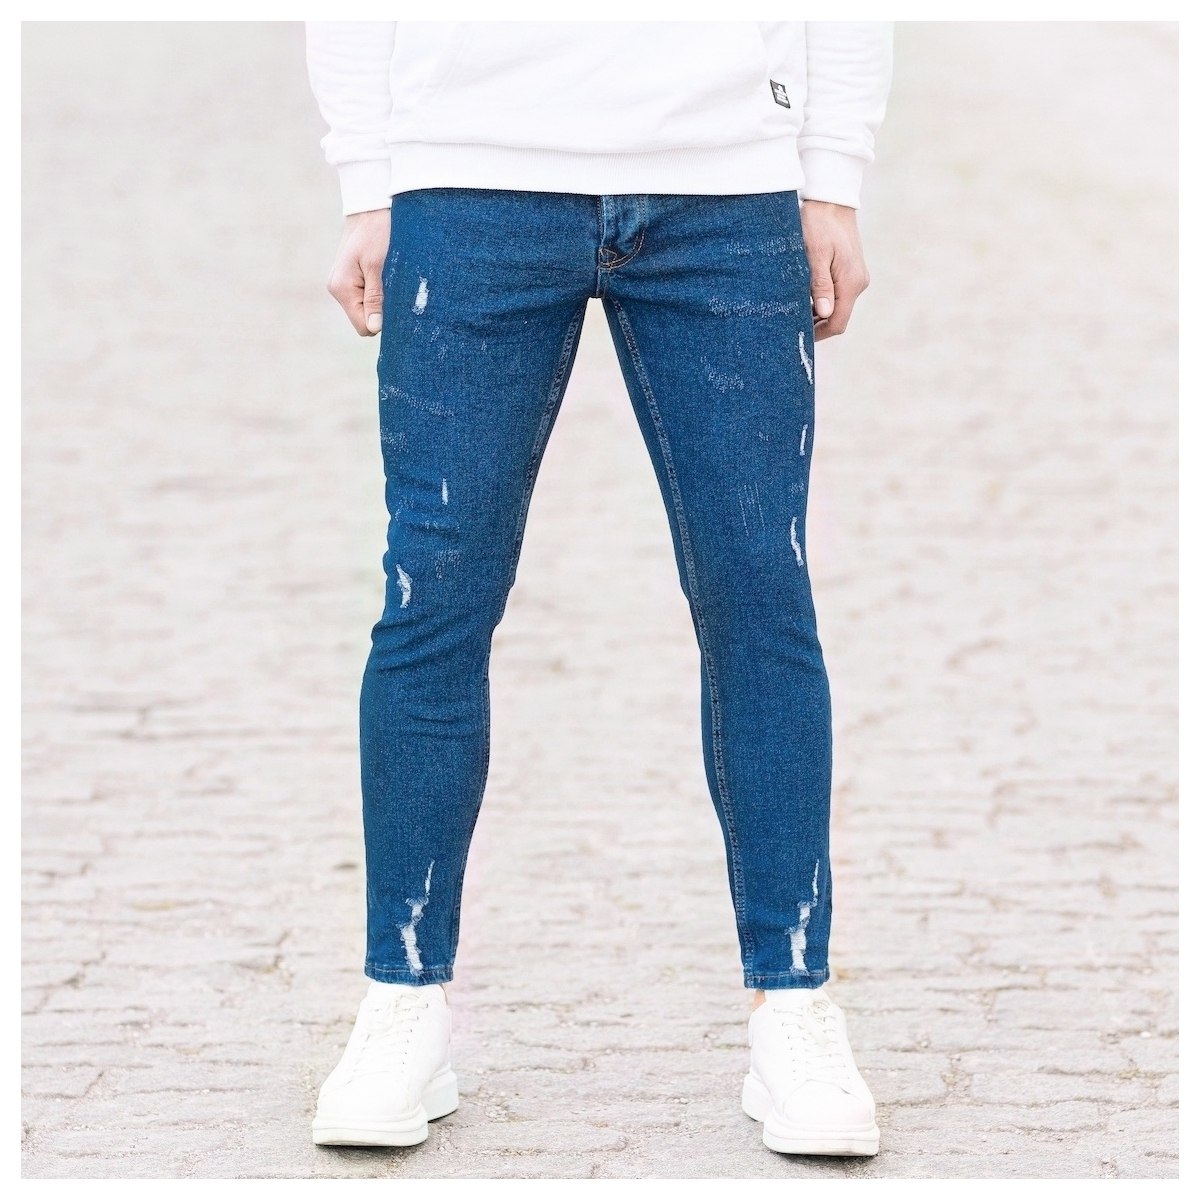 Herren Jeans mit Rissen in dunkelblau - 1